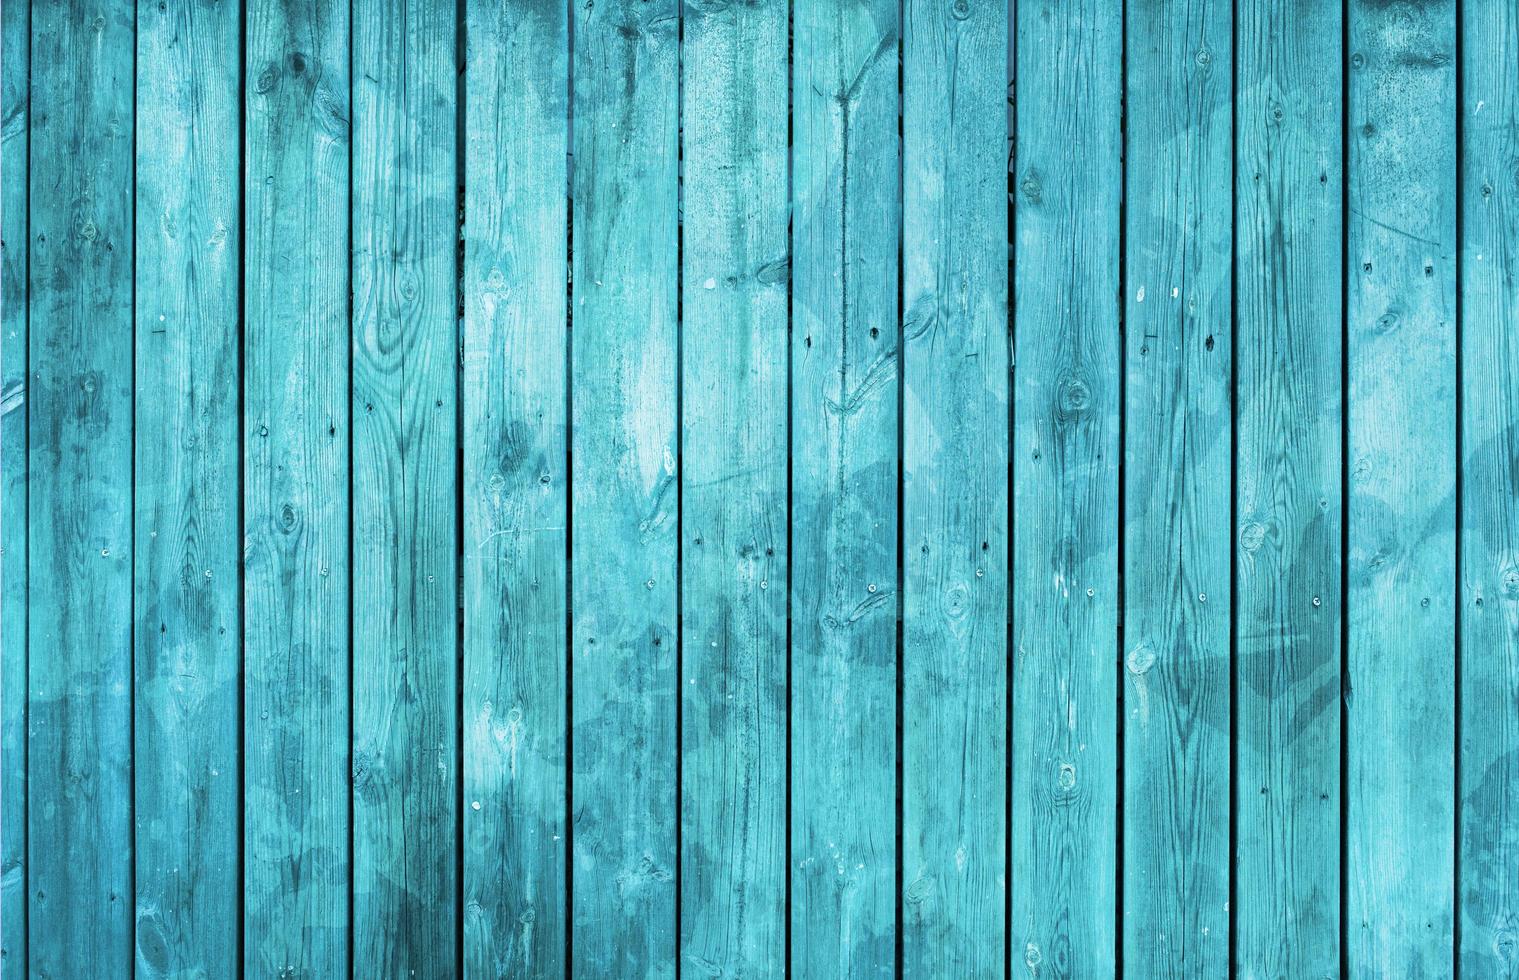 planches de bois de texture couleur turquoise. détails et résolution élevés photo